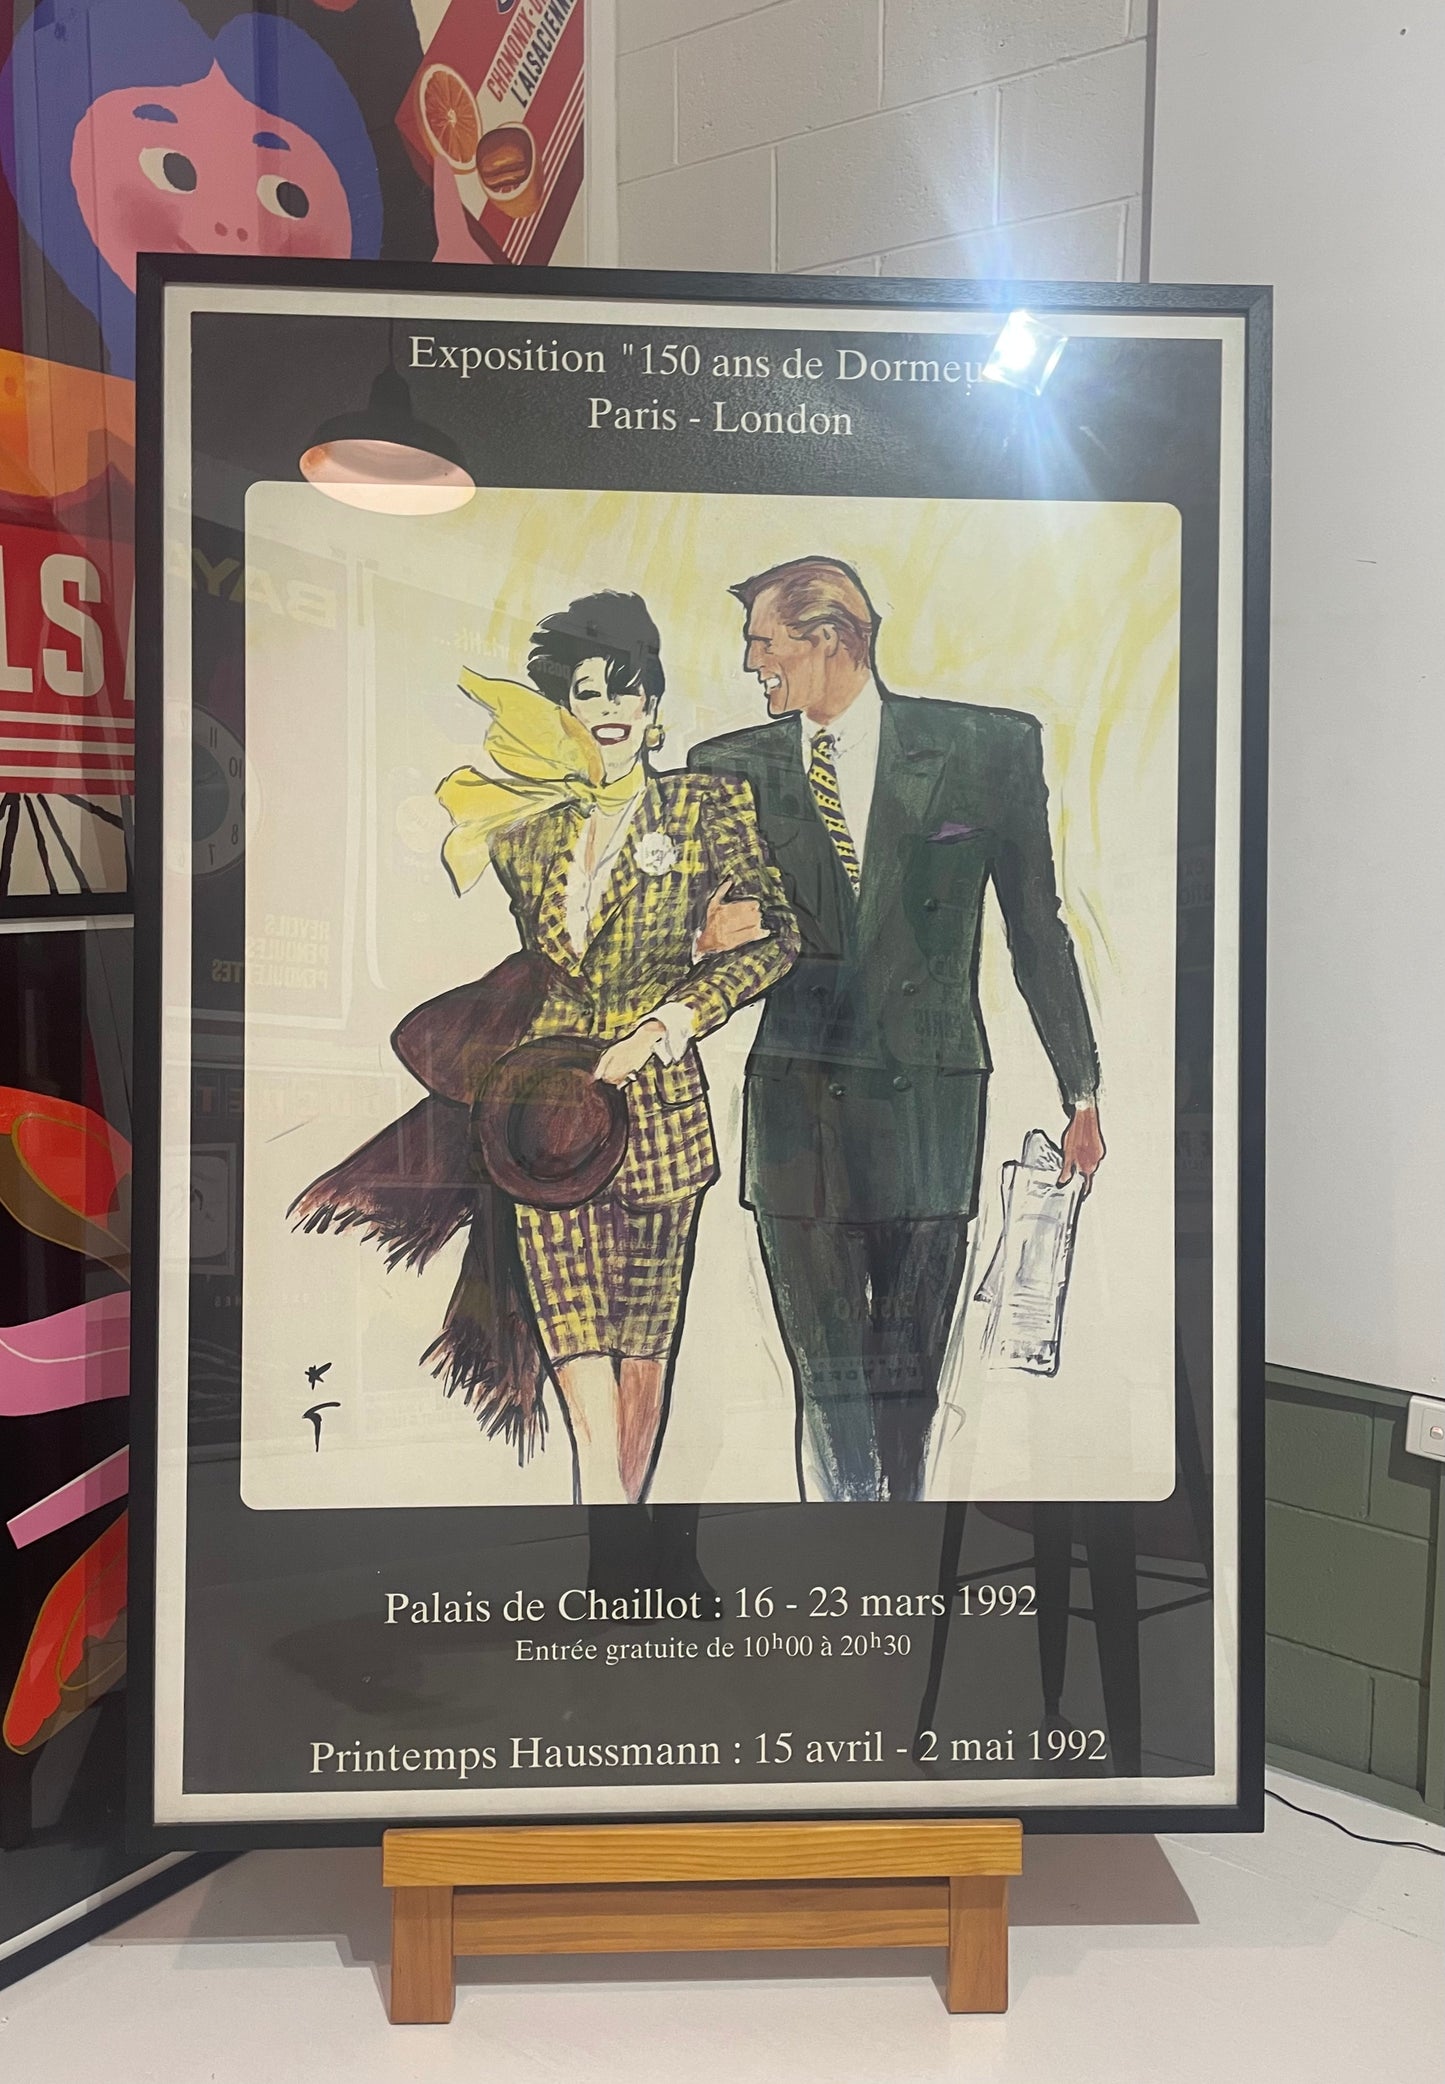 Exposition "150 ans de Dormeuil" Vintage Poster Framed